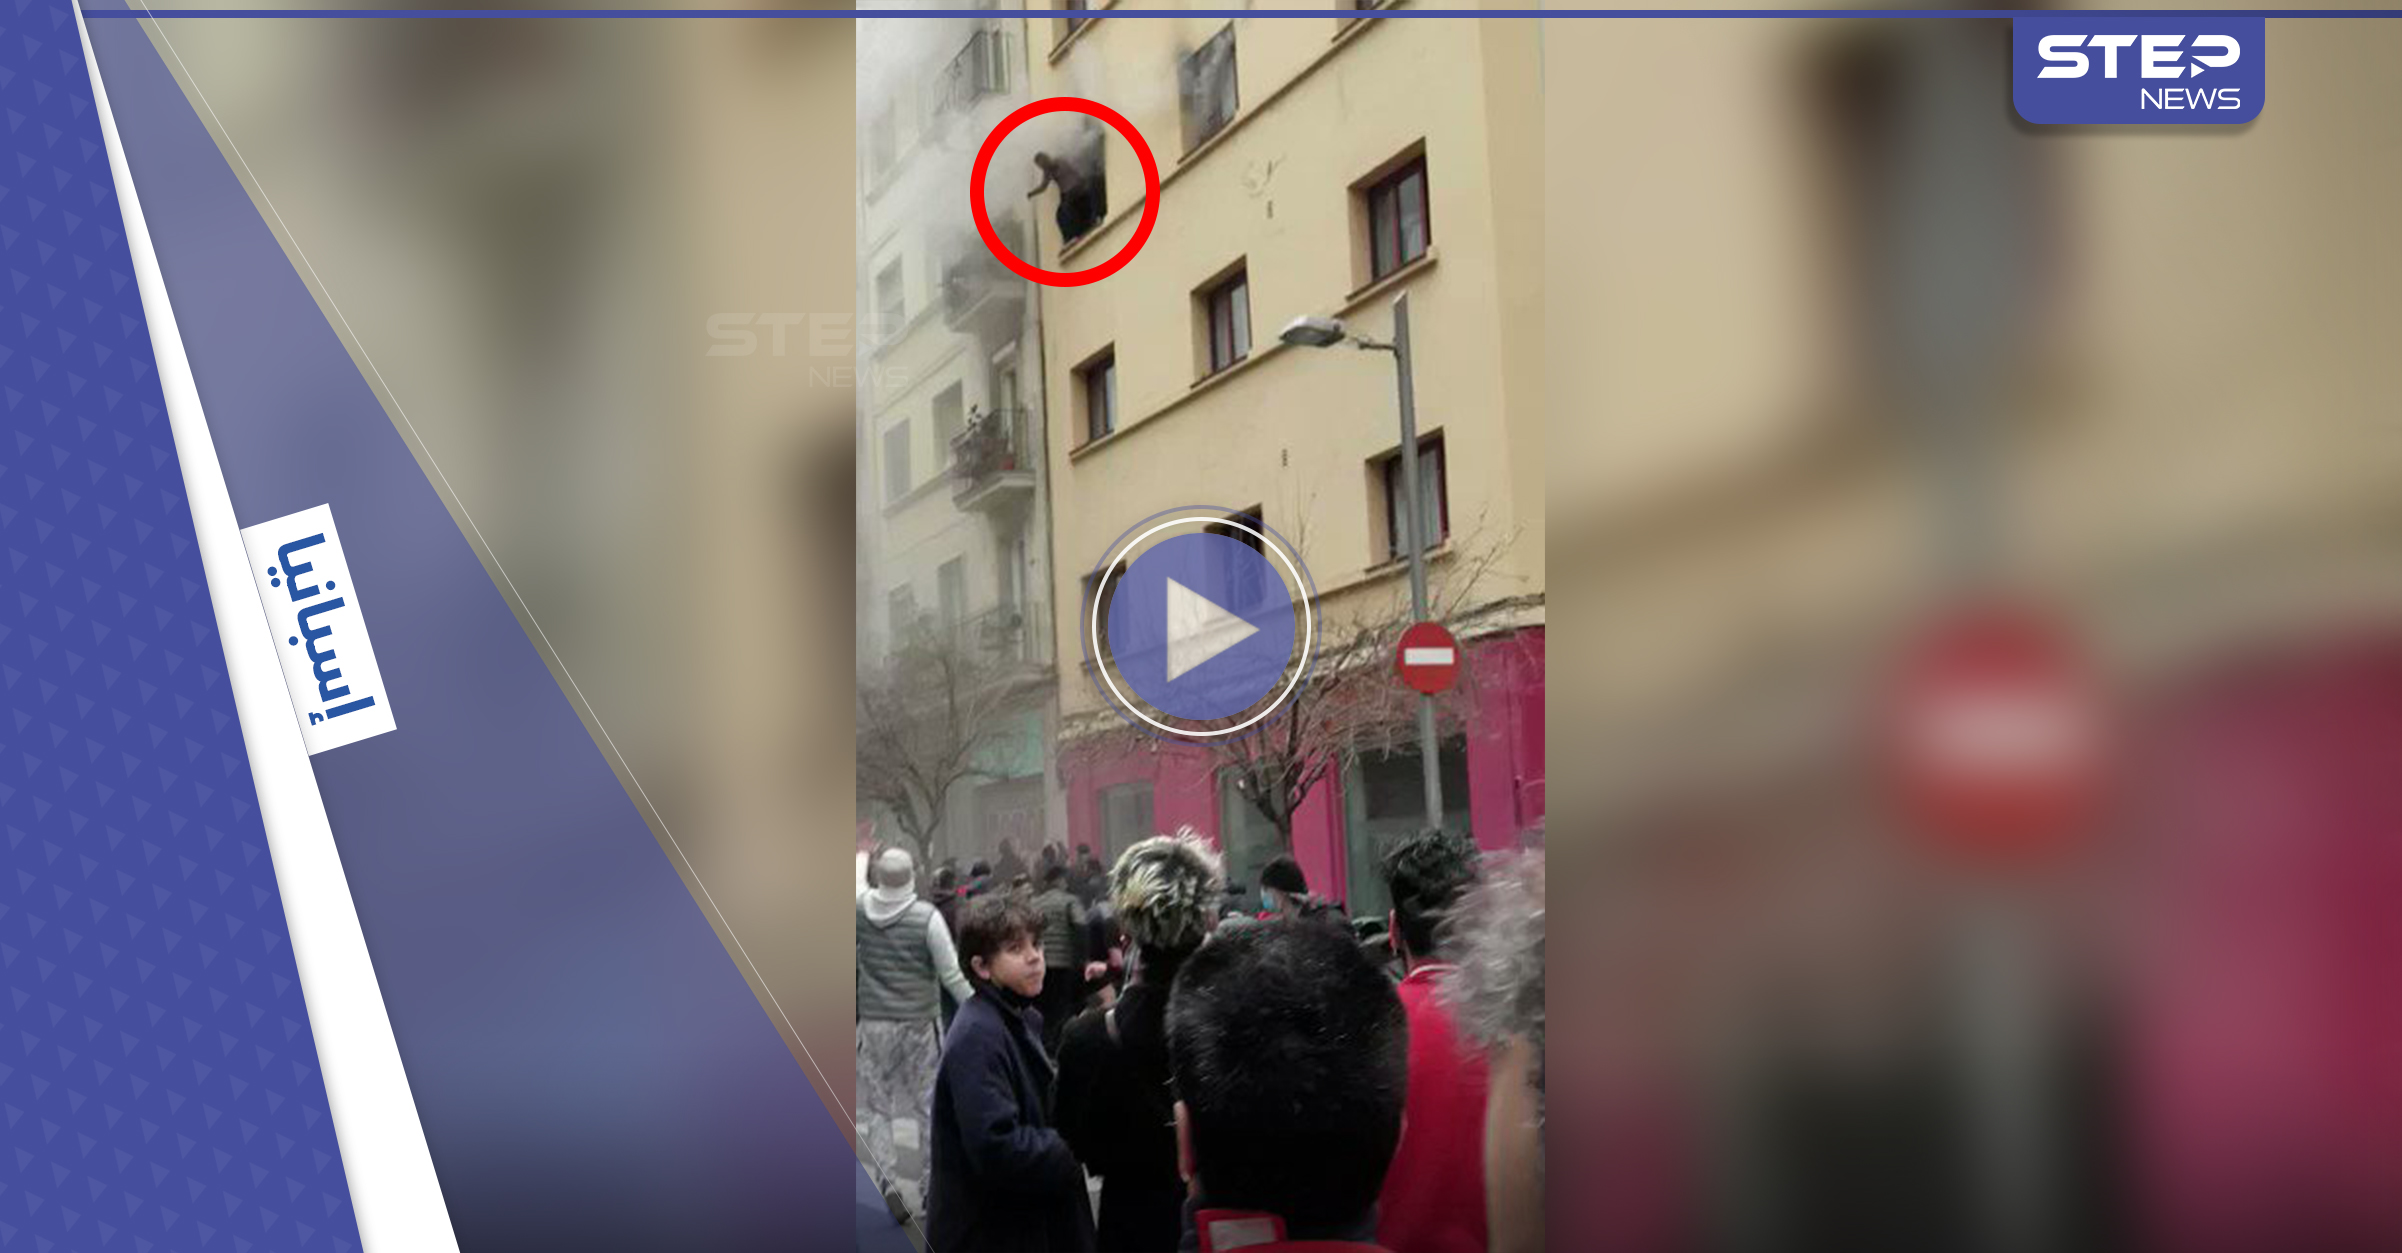 بالفيديو|| نزلاء فندق يلقون بأنفسهم من النوافذ في برشلونة بعد نشوب حريق فيه